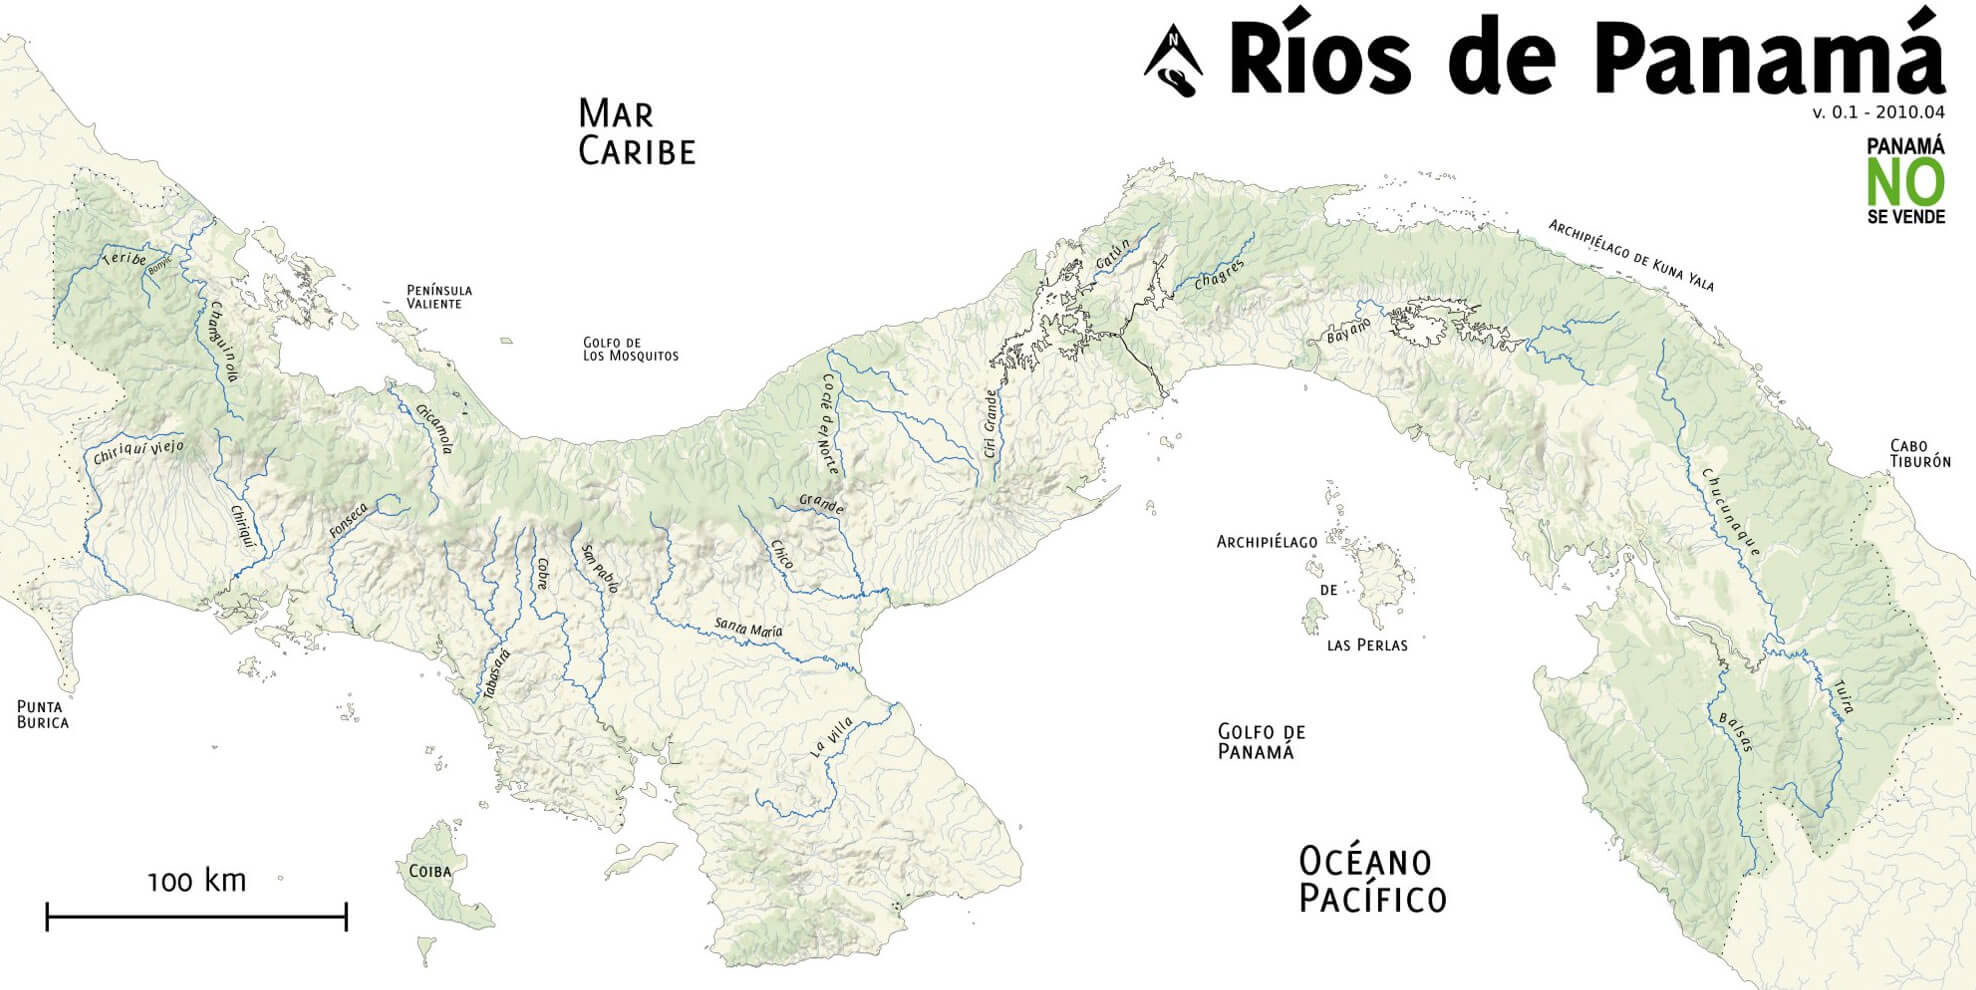 Rivers Carte de Panama 2010